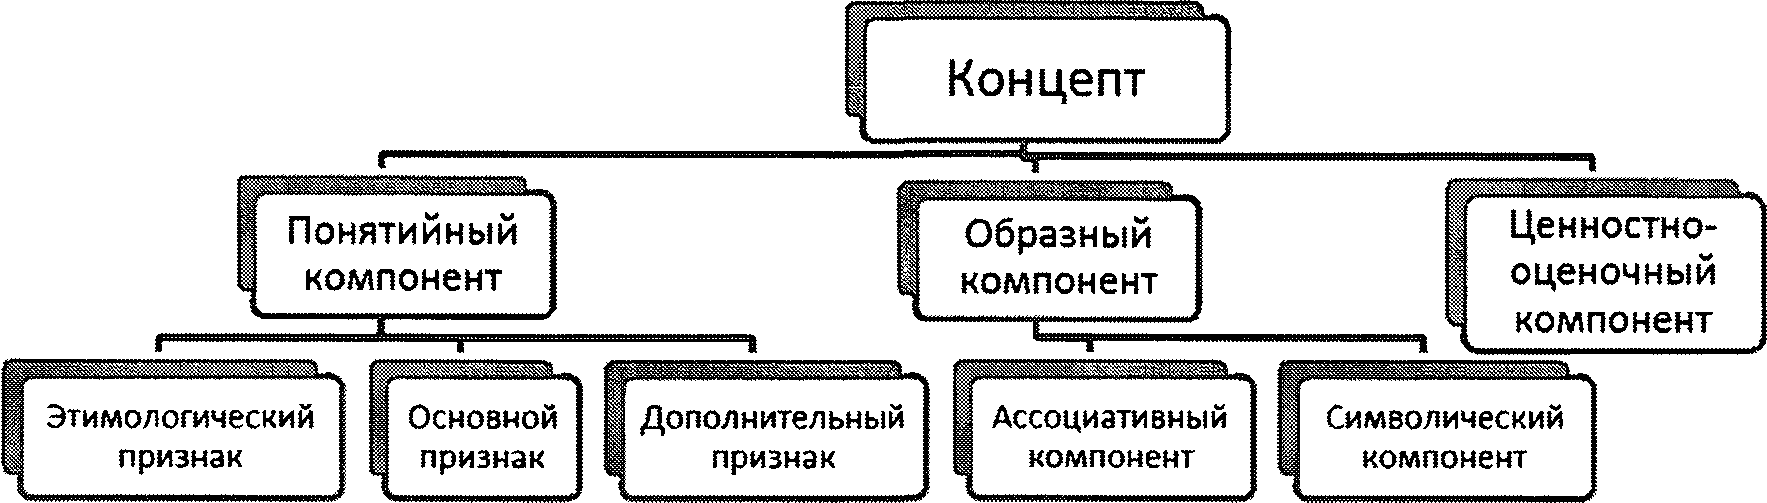 Схема 1. Структура концепта